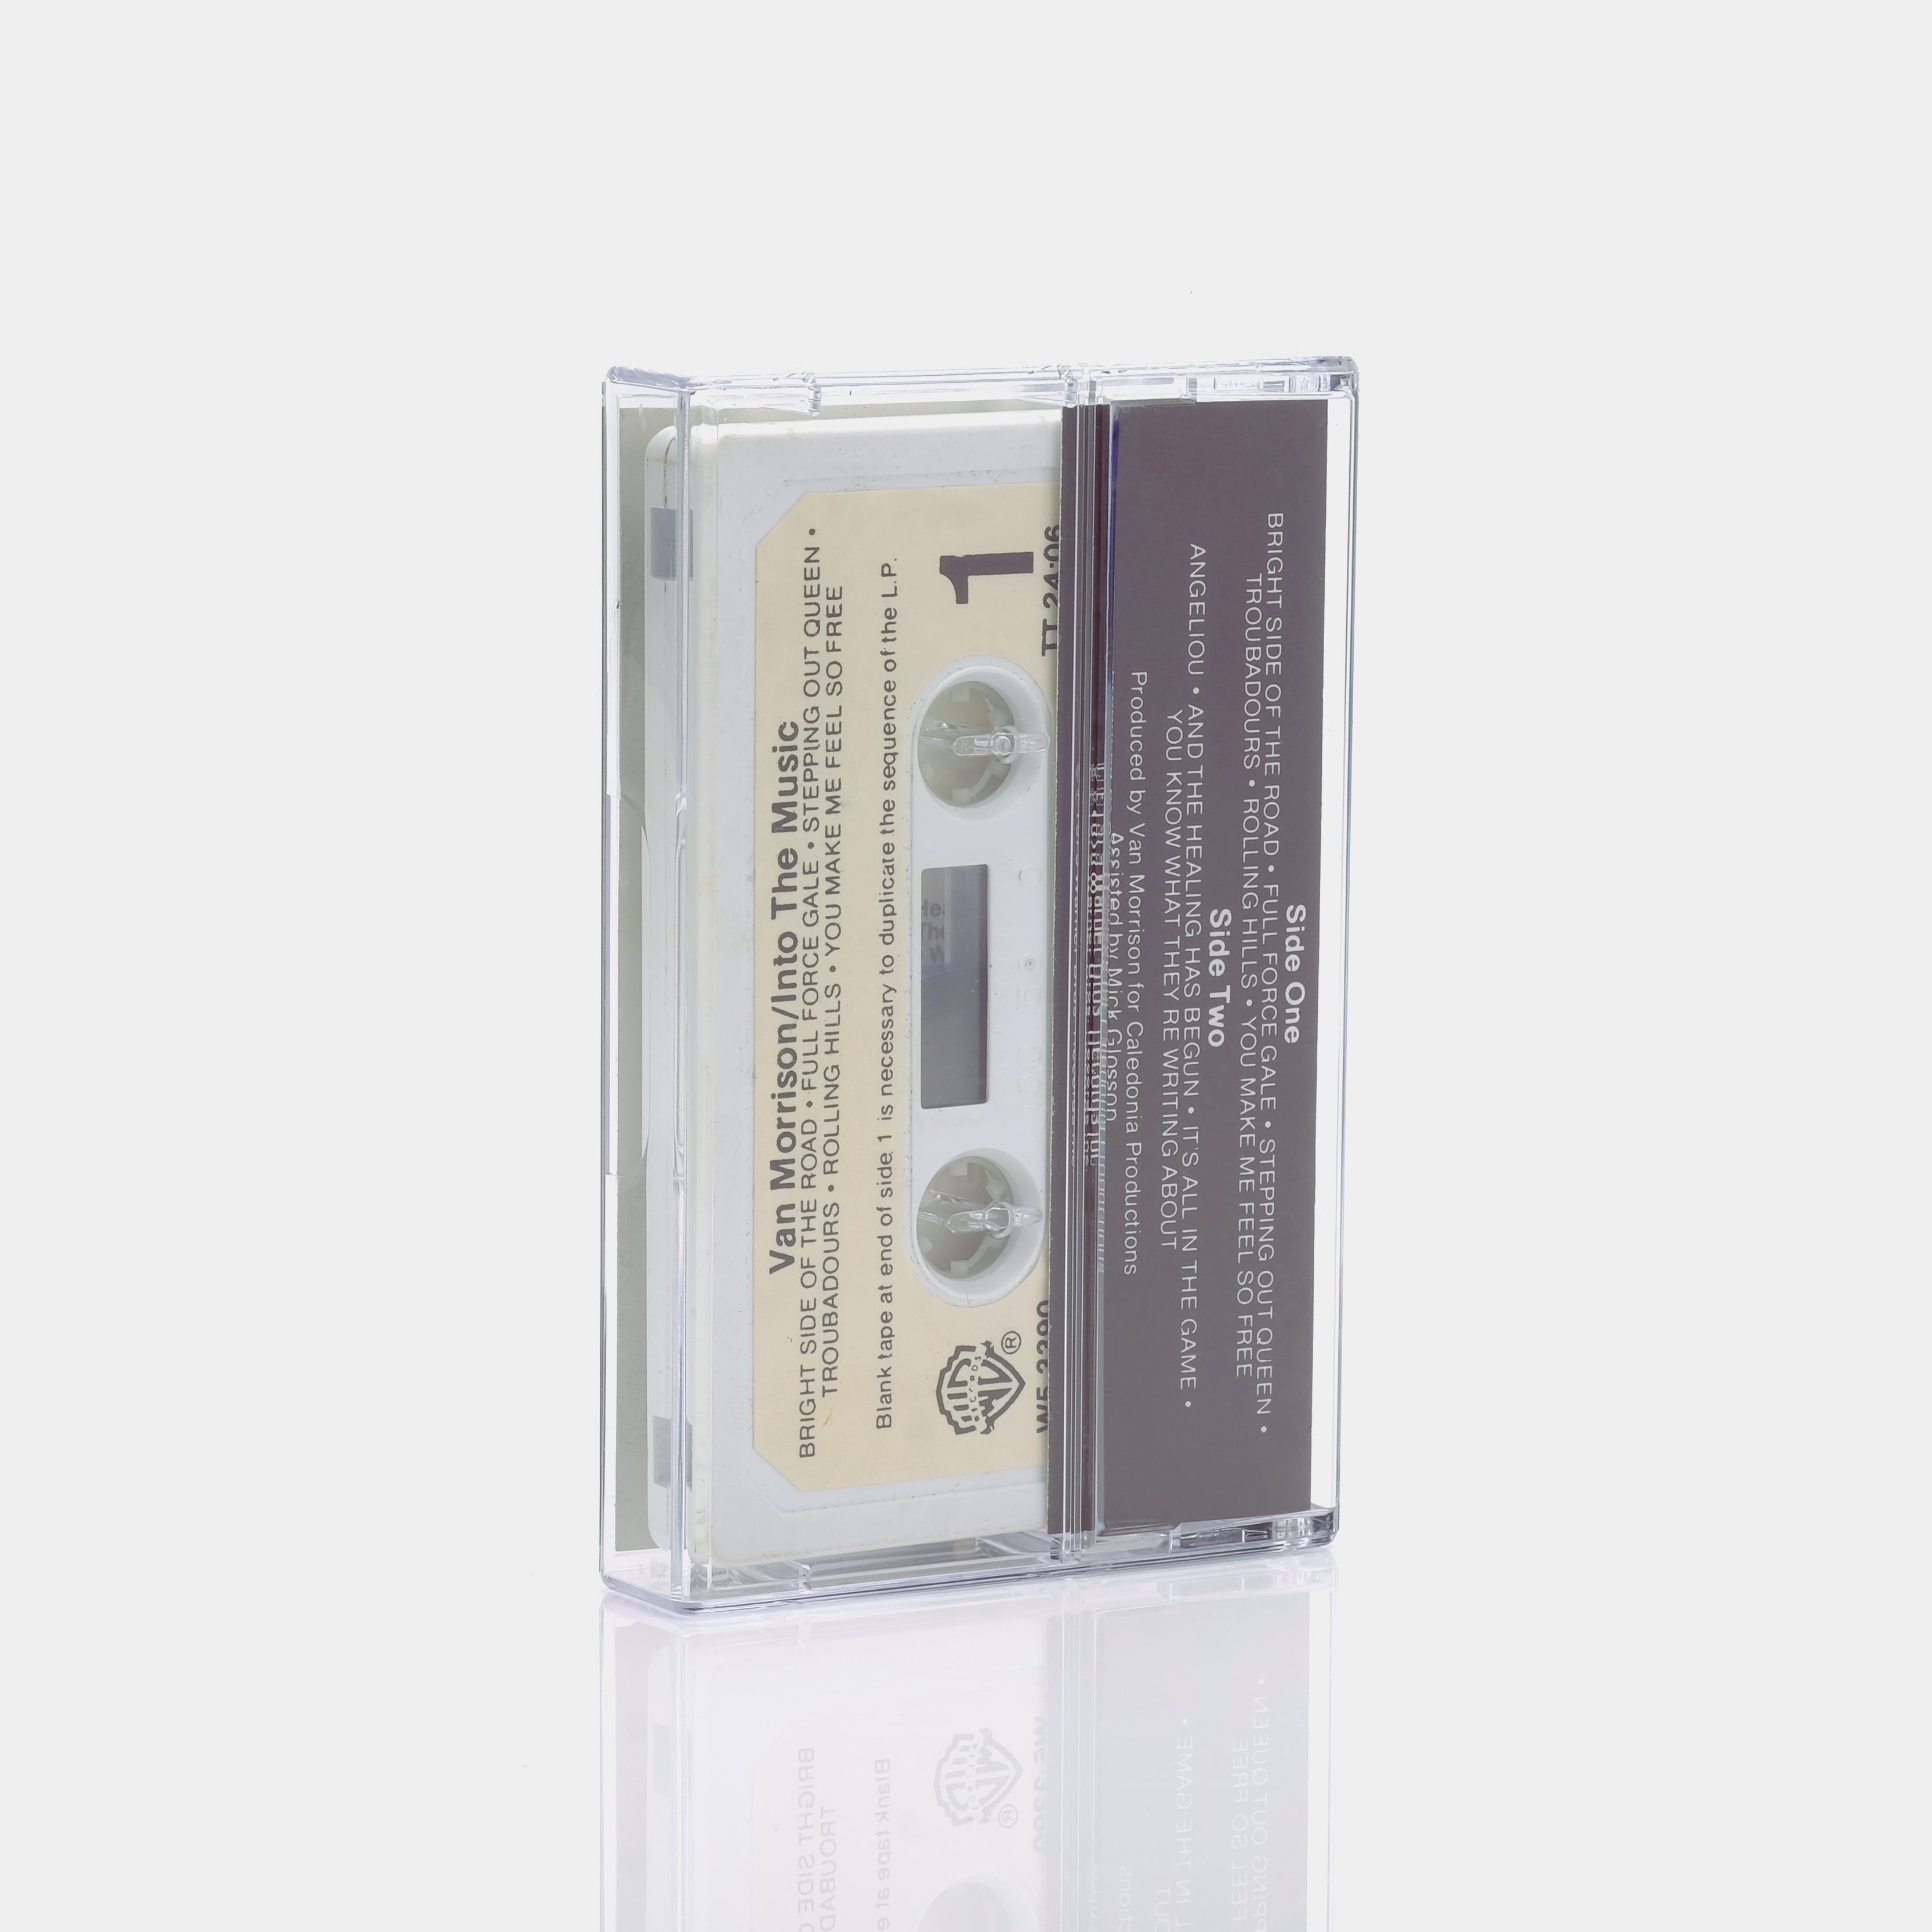 Van Morrison - Into The Music Cassette Tape